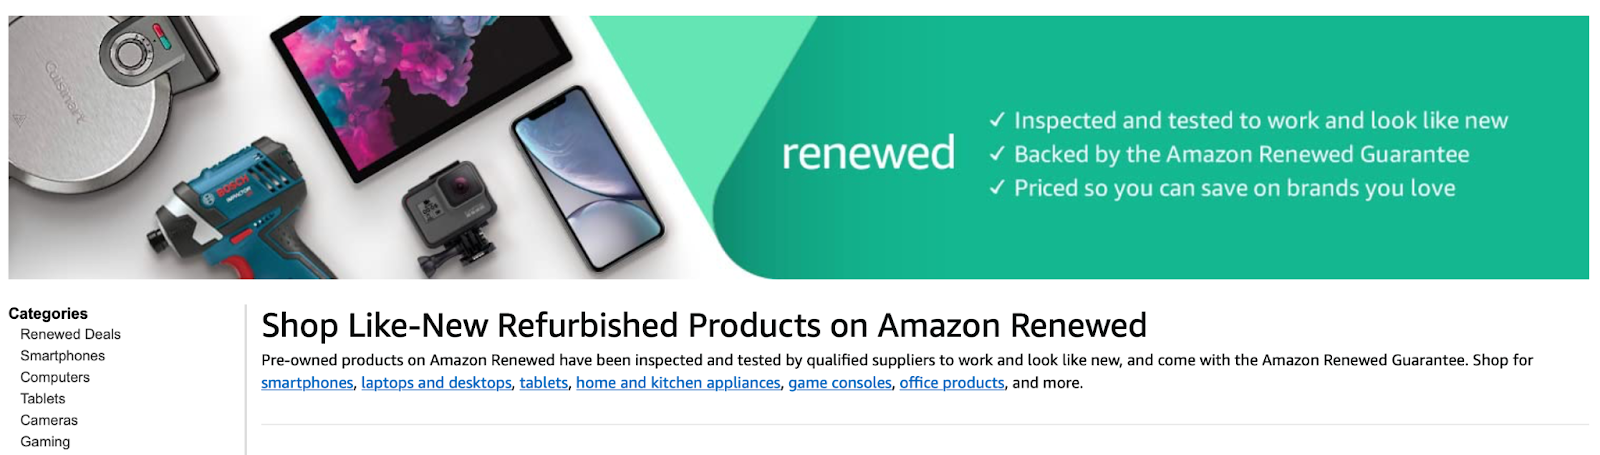 Amazon Renewed Program